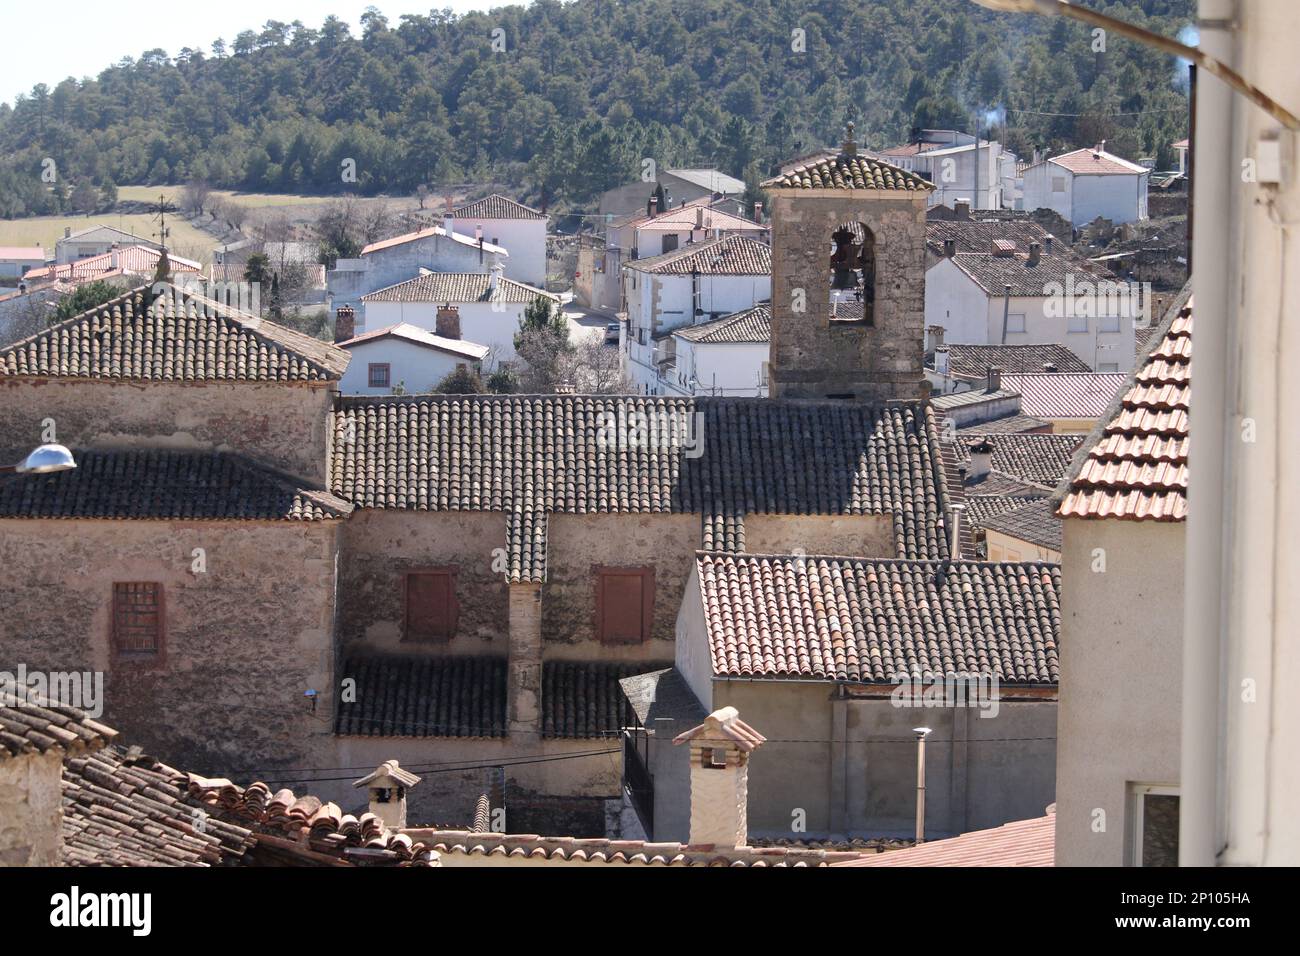 Una postal de un pueblo español Stock Photo